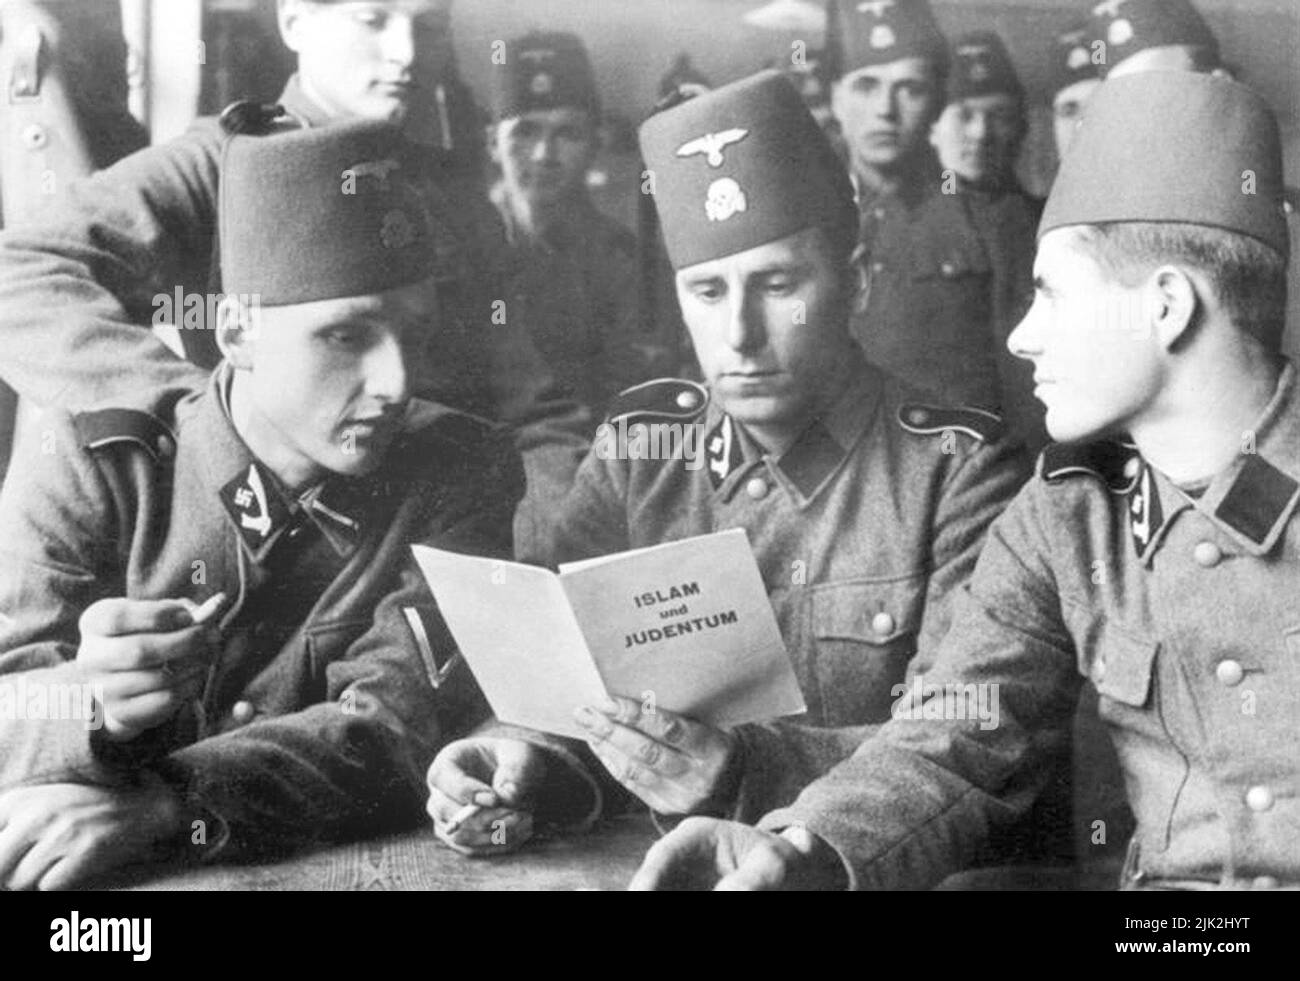 Soldaten der SS-Division 13. der SS Handschar (1. Kroatisch) mit einer Broschüre über 'Islam und Judentum', 1943 Stockfoto